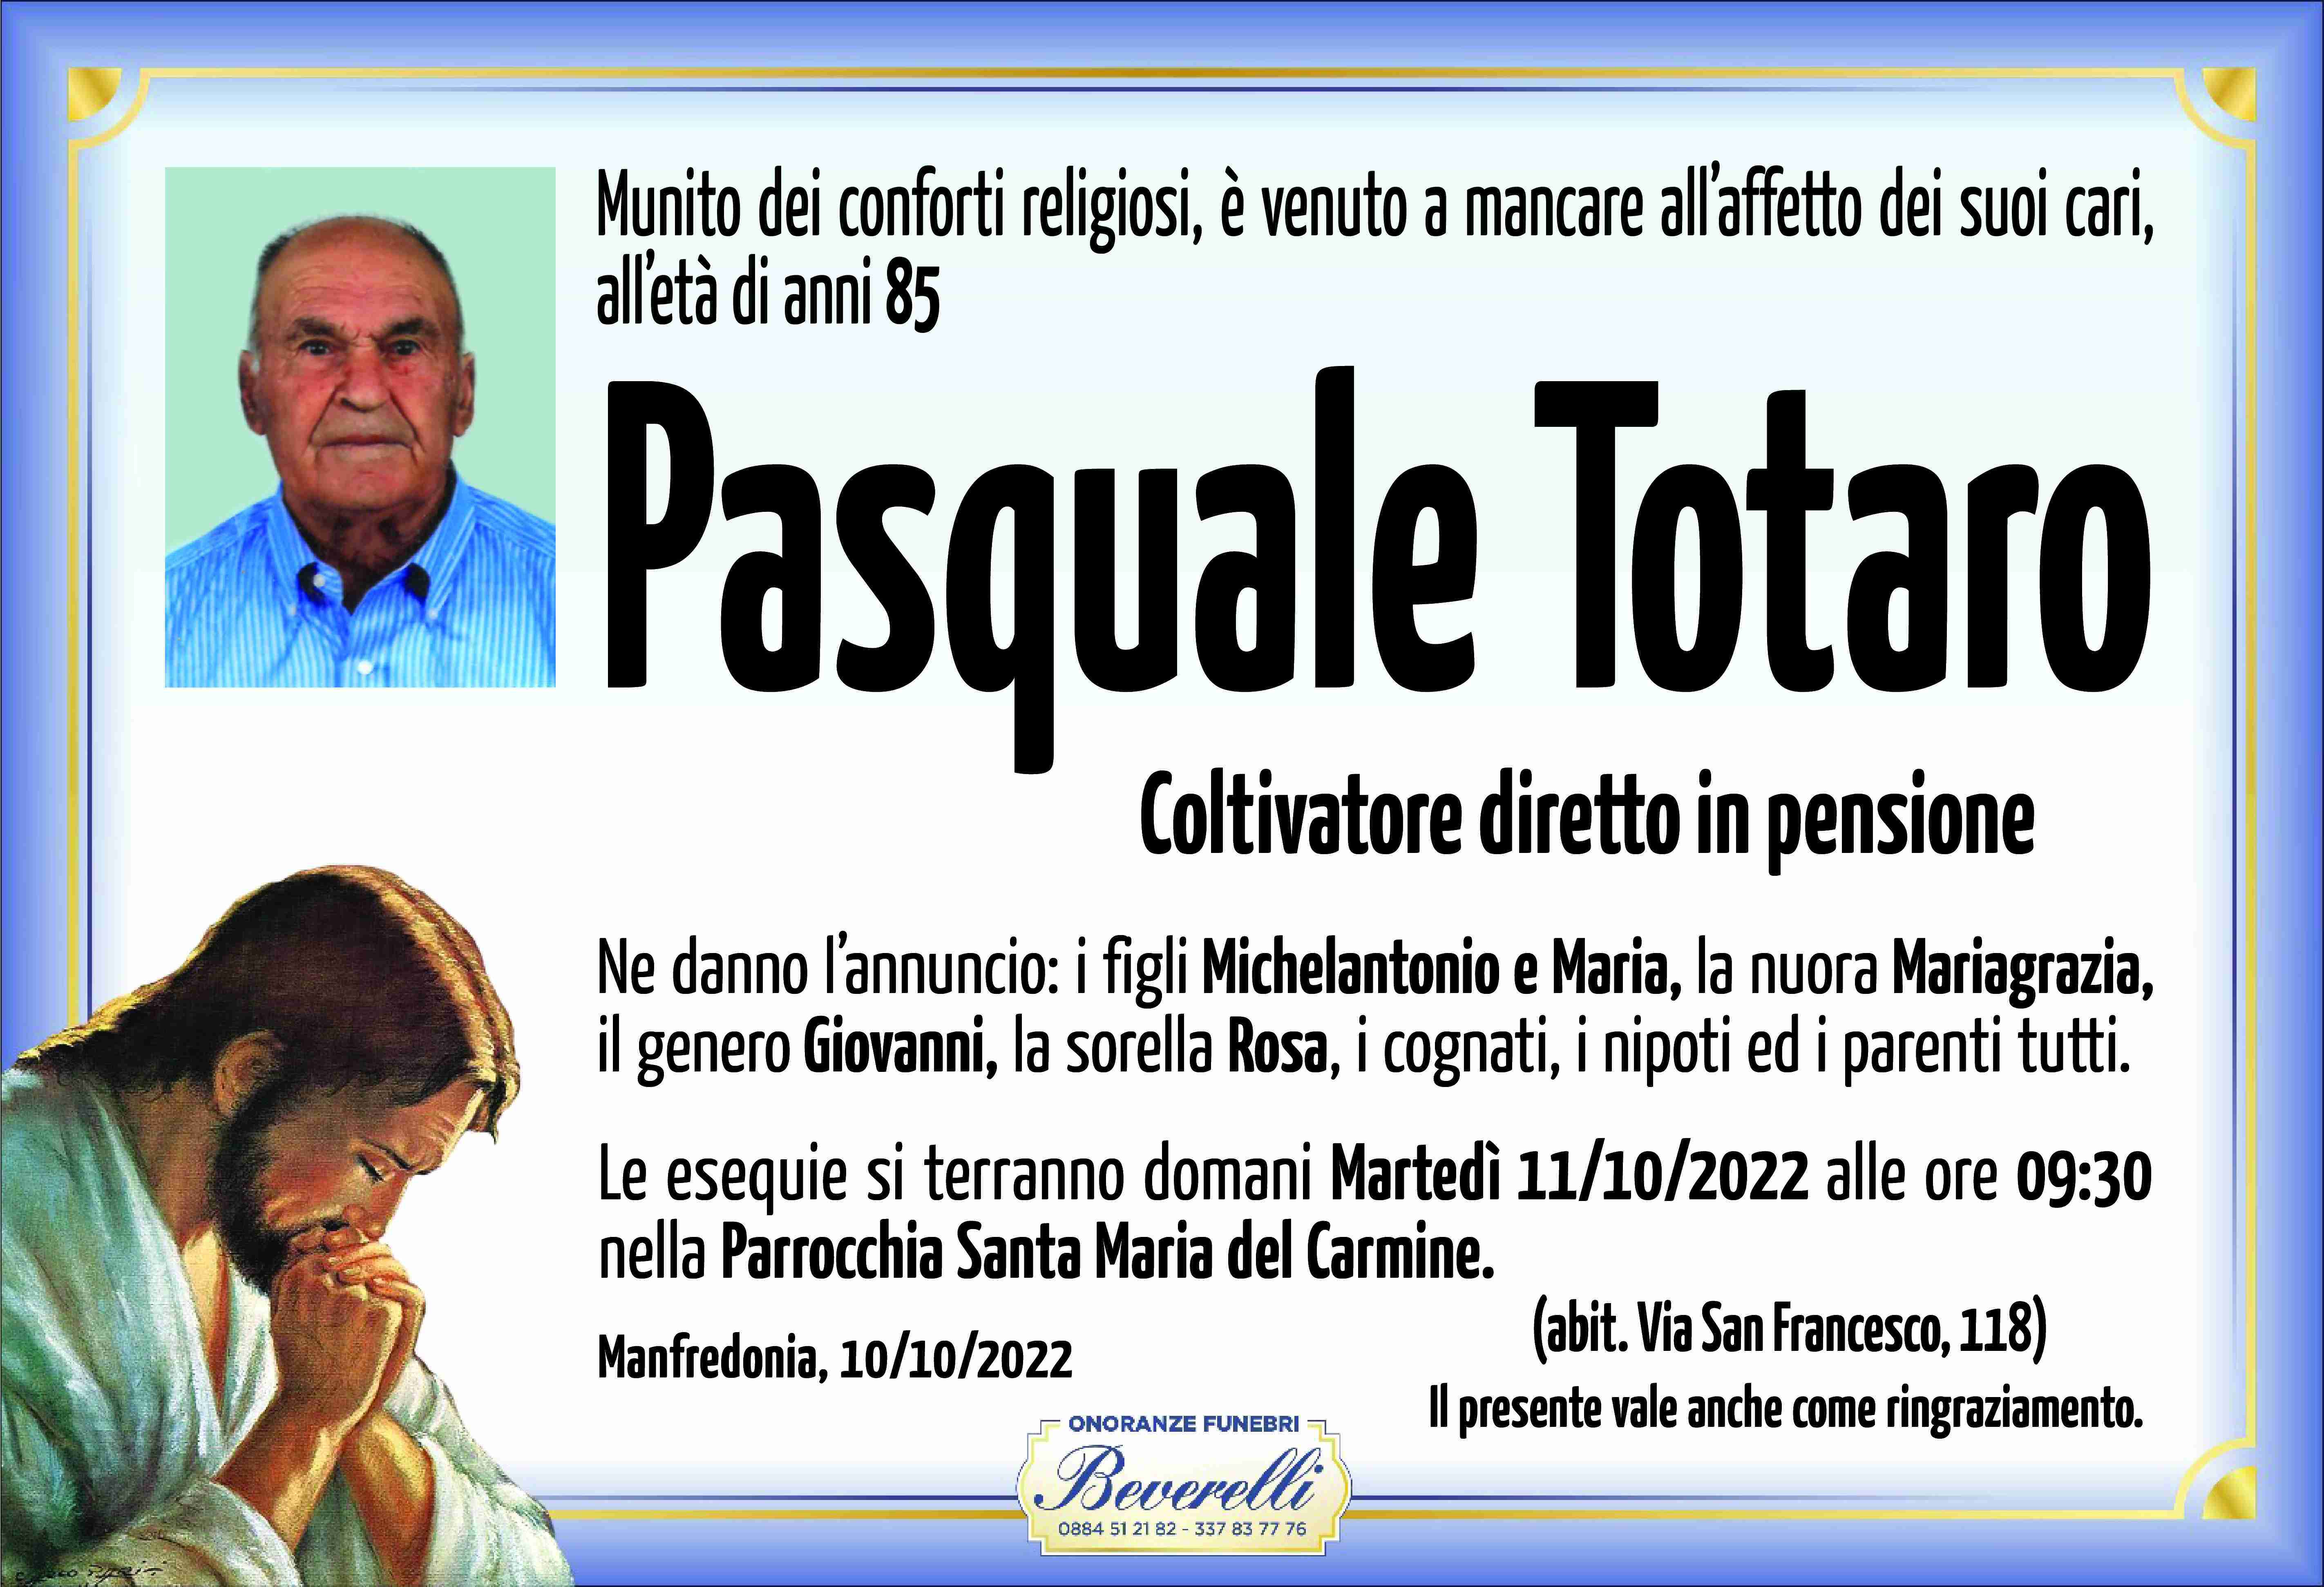 Pasquale Totaro